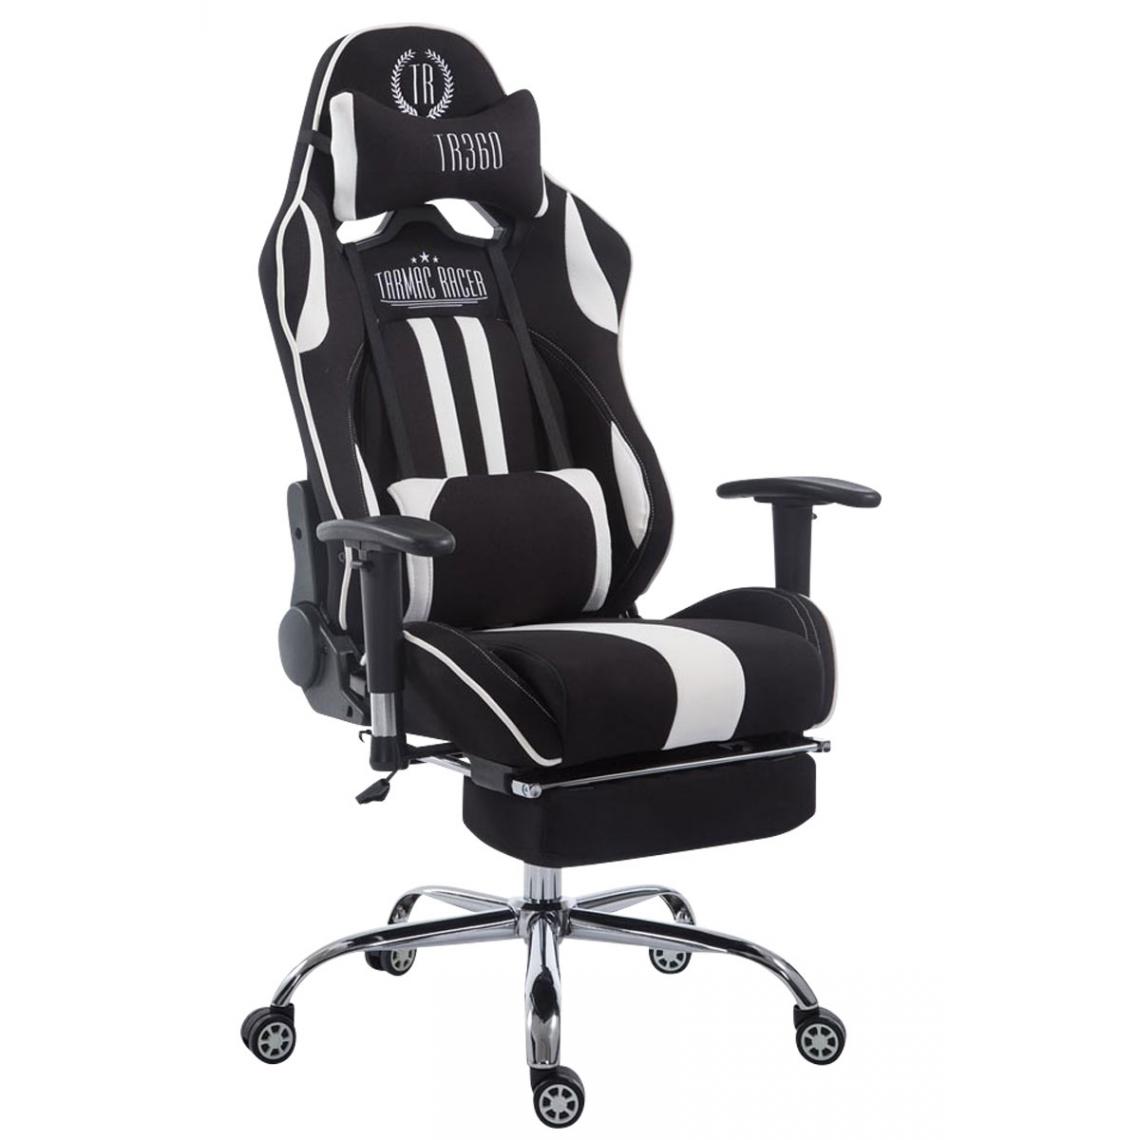 Icaverne - Splendide Chaise de bureau Luanda tissu Limit avec repose-pieds couleur noir et blanc - Chaises